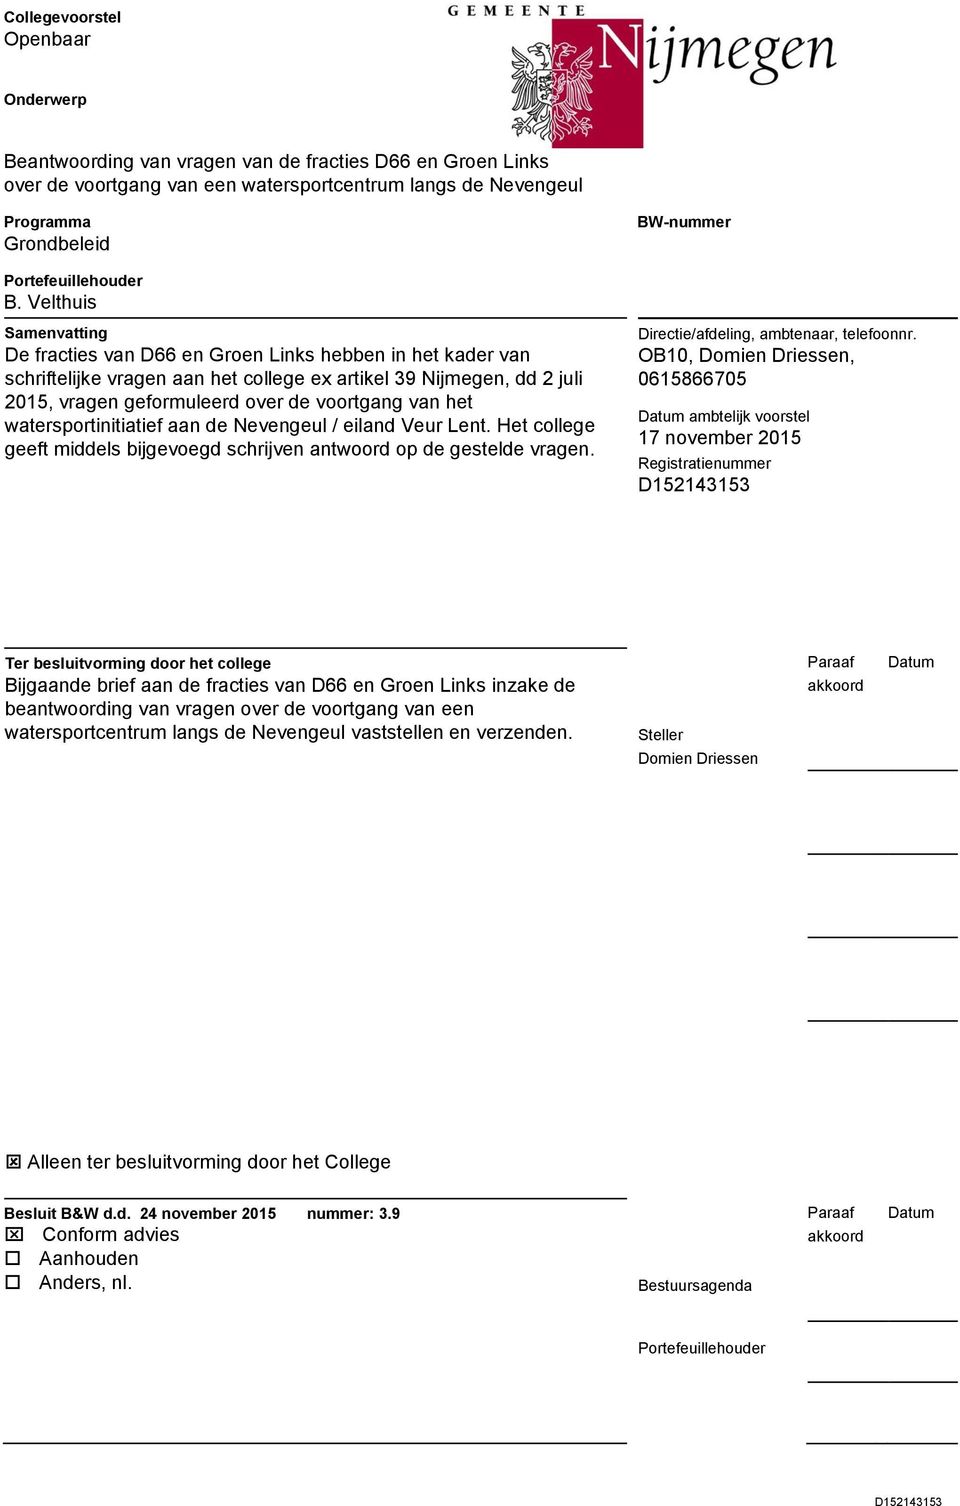 Velthuis Samenvatting De fracties van D66 en Groen Links hebben in het kader van schriftelijke vragen aan het college ex artikel 39 Nijmegen, dd 2 juli 2015, vragen geformuleerd over de voortgang van